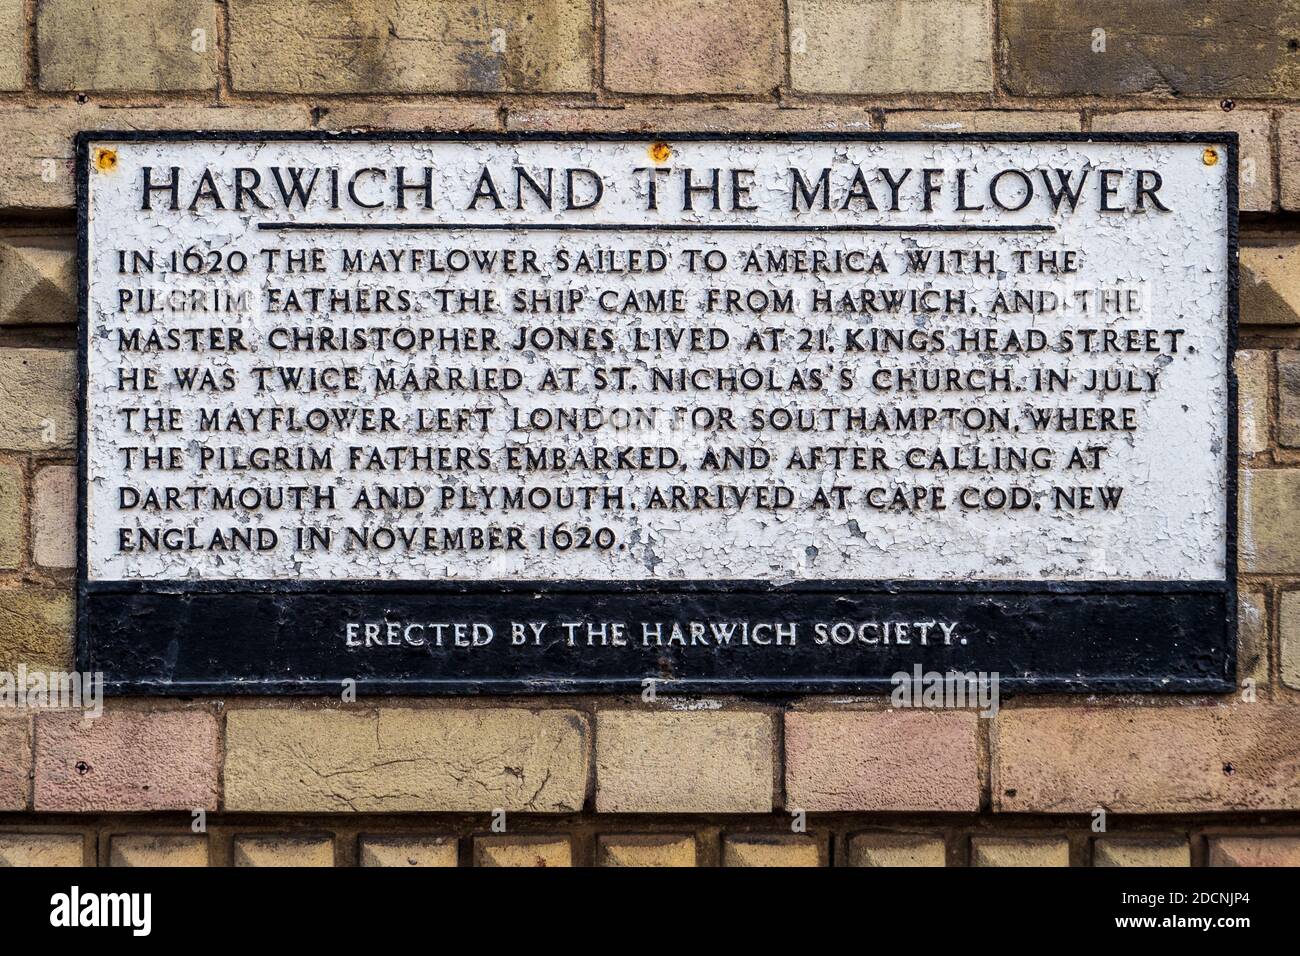 Mayflower Plaque Harwich - il Mayflower era un Harwich basato Nave e navigato in America con i Padri Pellegrini 1620 - targa della Harwich Society Foto Stock